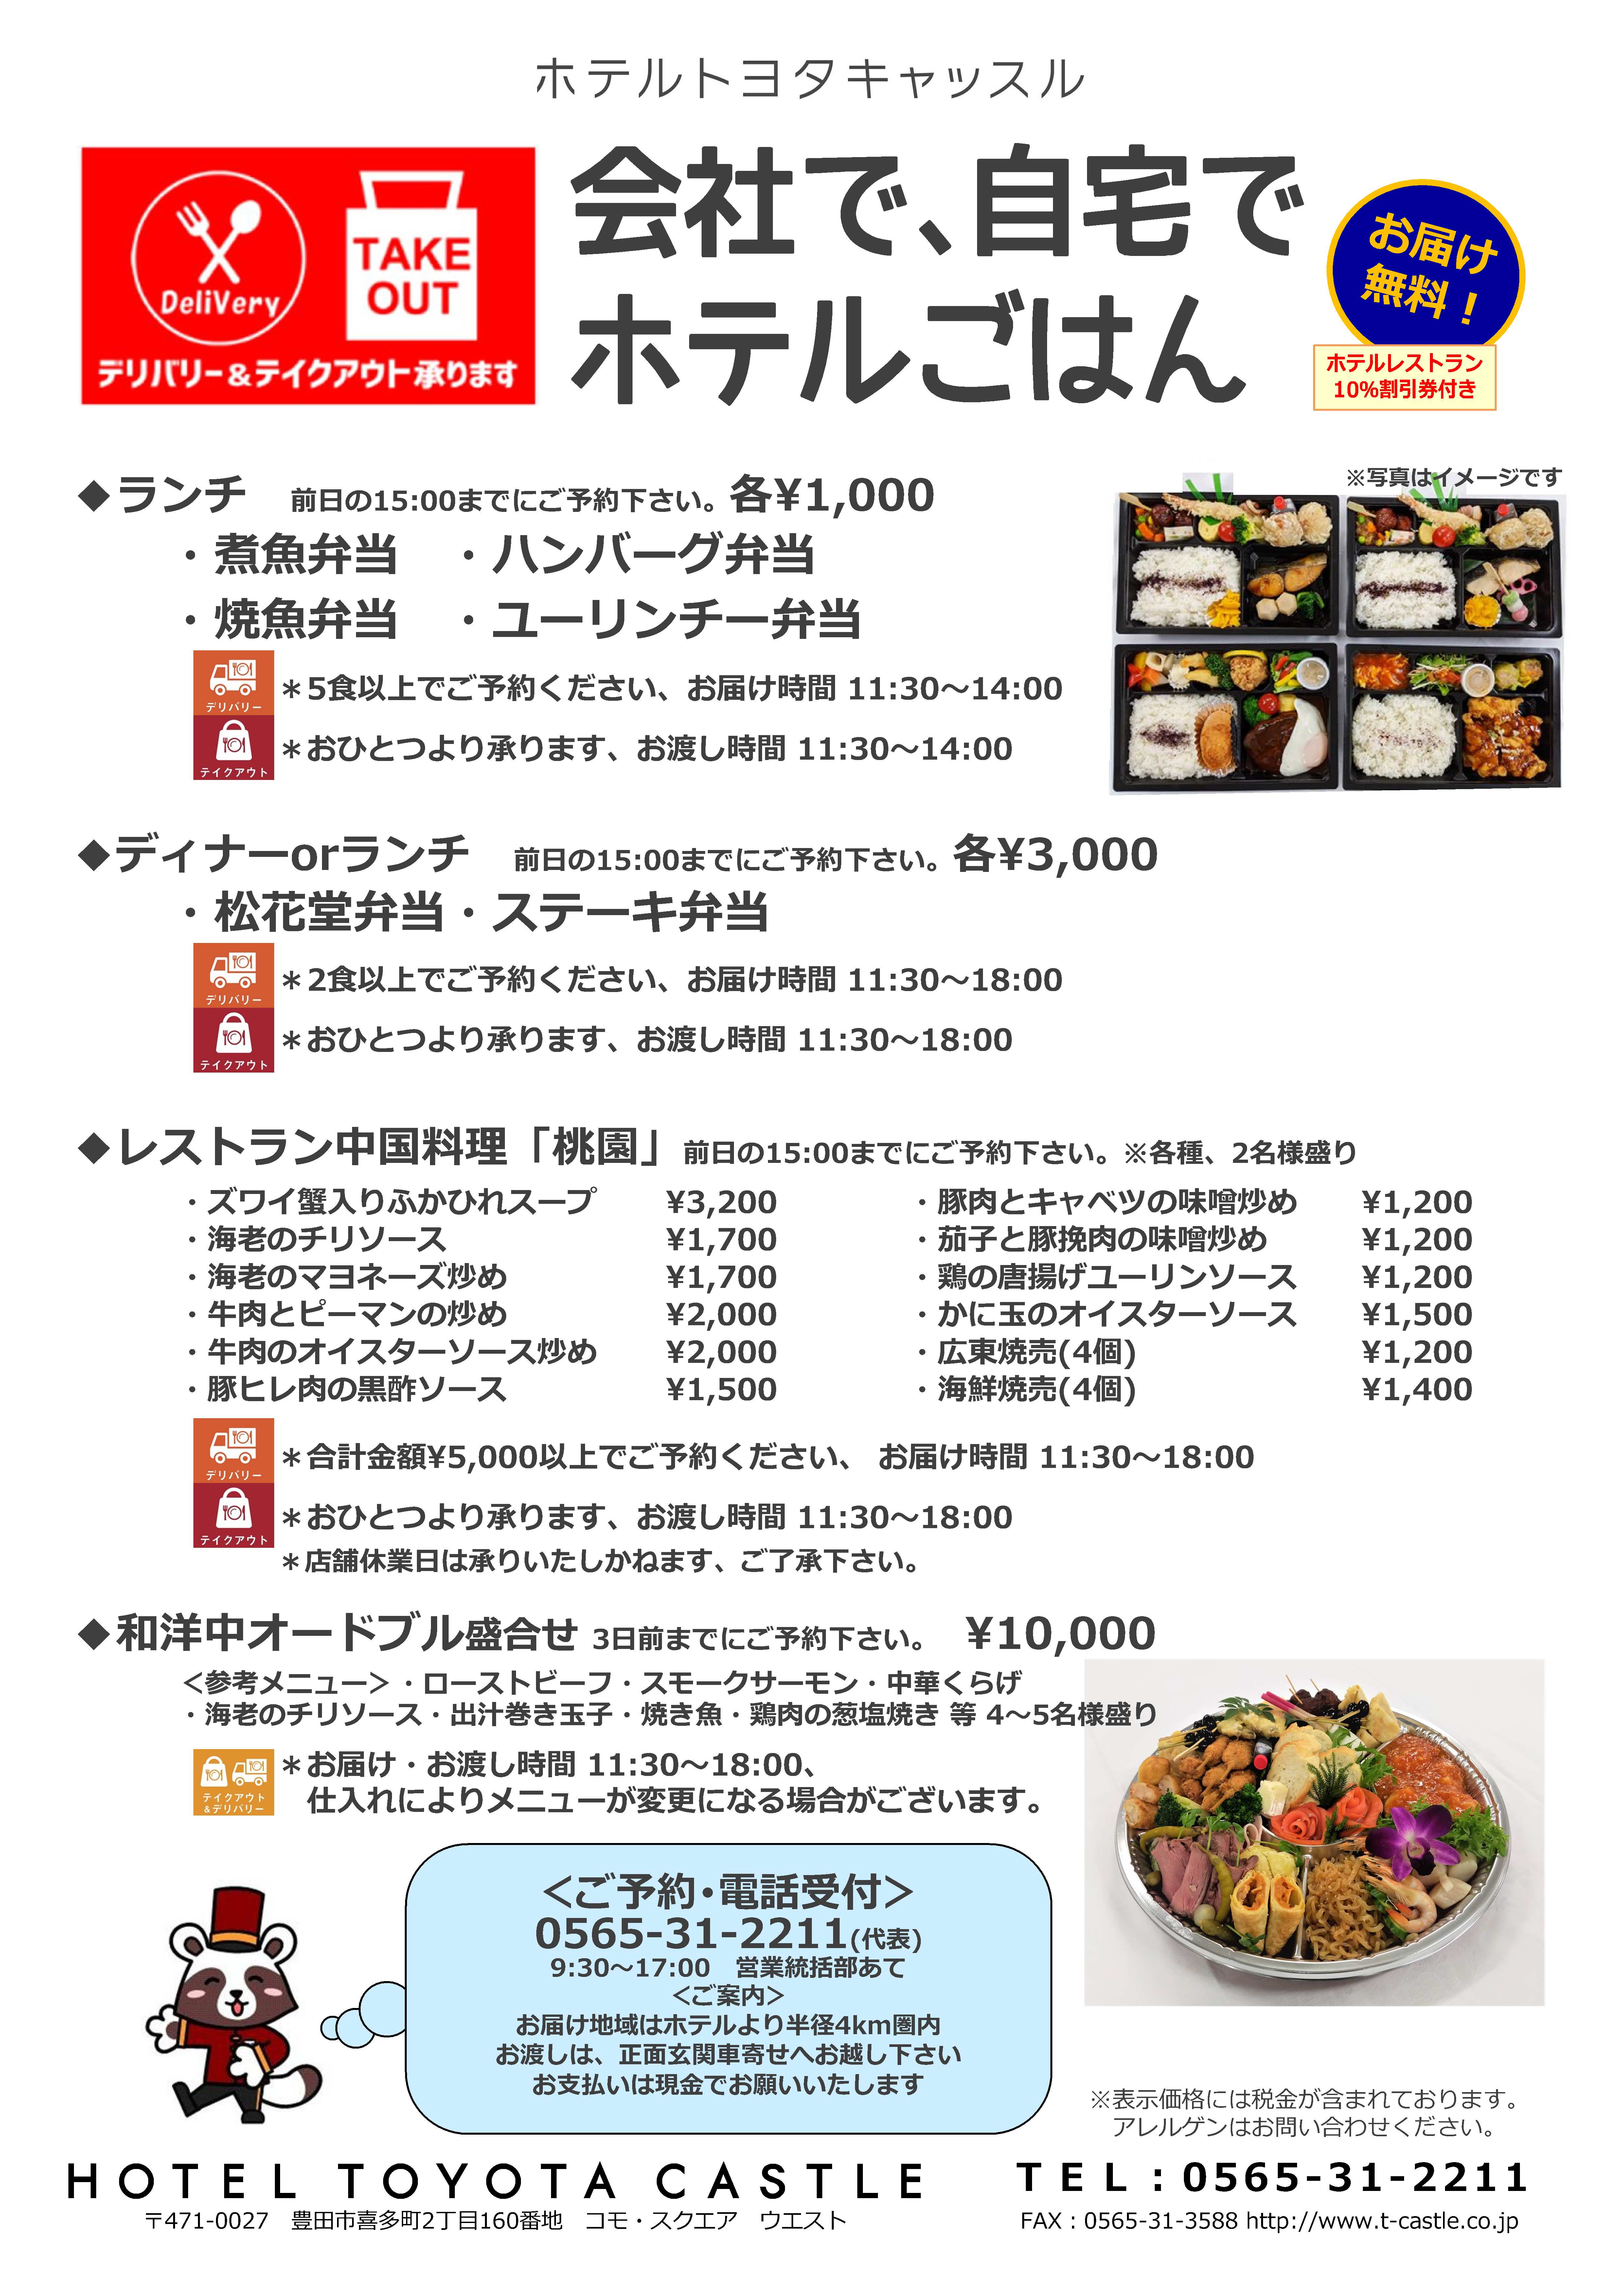 ホテルトヨタキャッスル公式サイト 豊田市 宿泊 レストラン 宴会